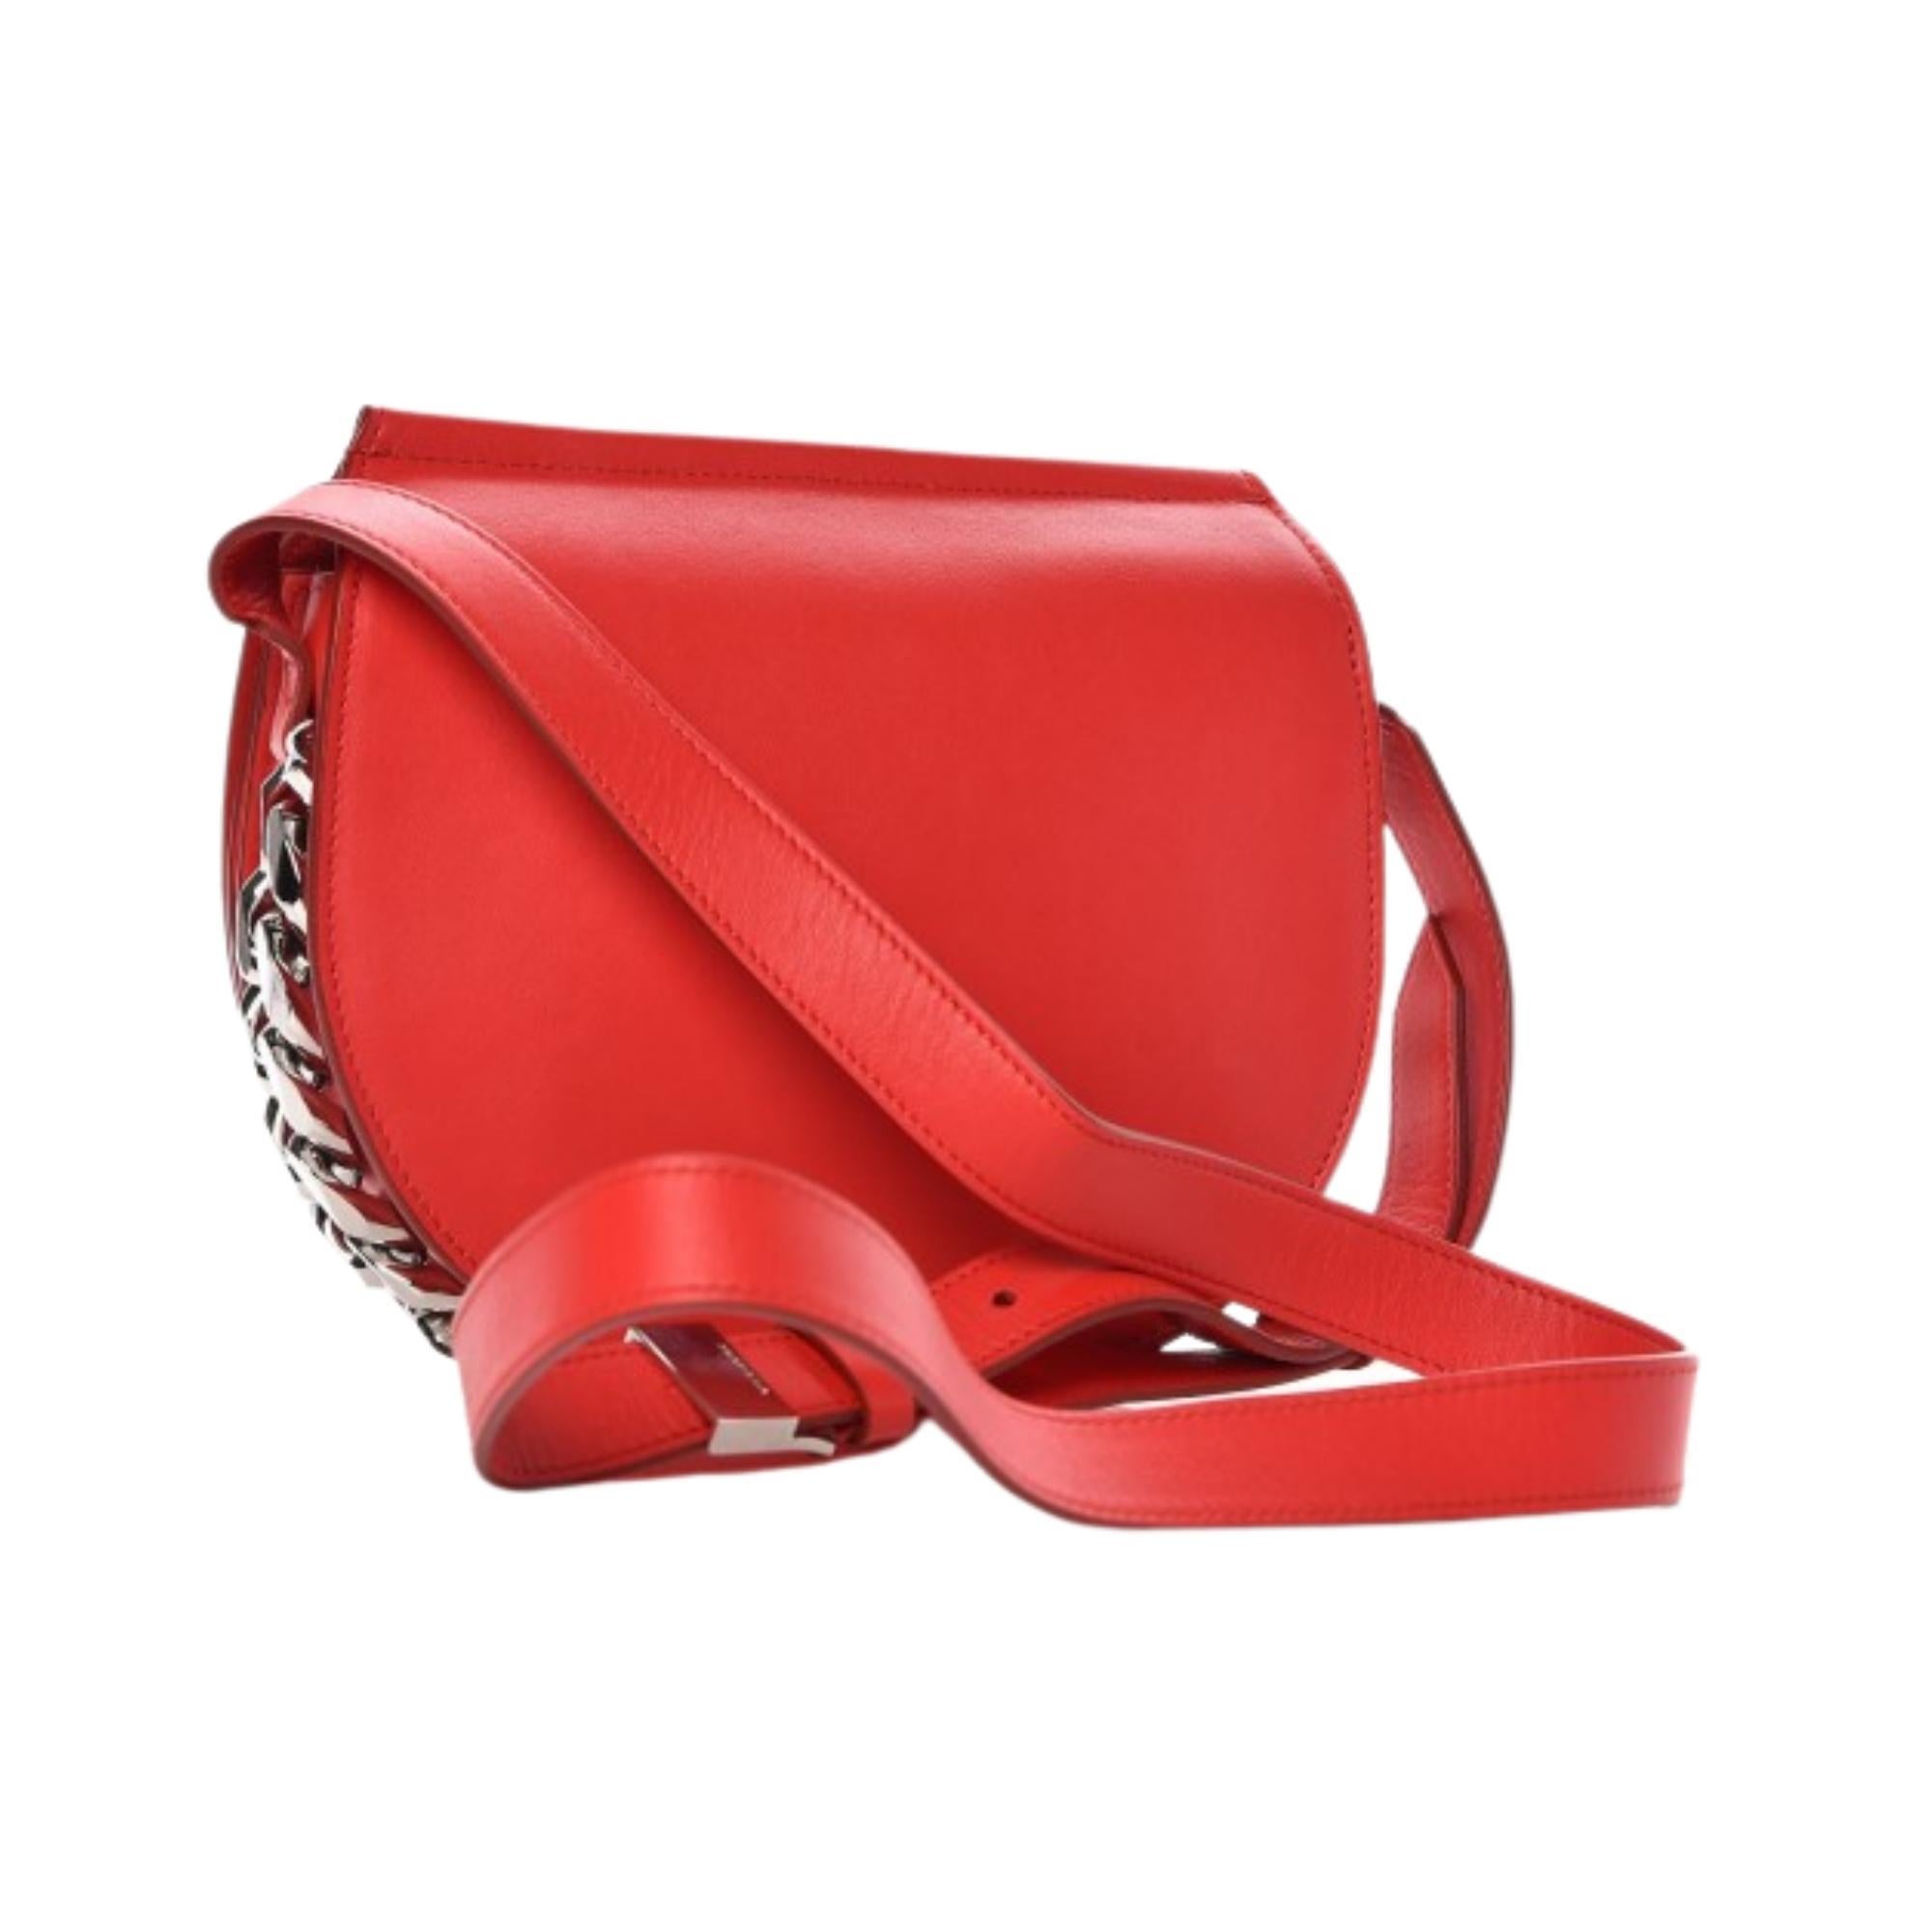 Cette sacoche unique de Givenchy est réalisée en cuir de veau rouge avec des chaînes en argent poli sur les côtés et le bas. Le sac est également doté d'une bandoulière et d'un rabat à fermeture magnétique qui s'ouvre sur un intérieur beige avec une